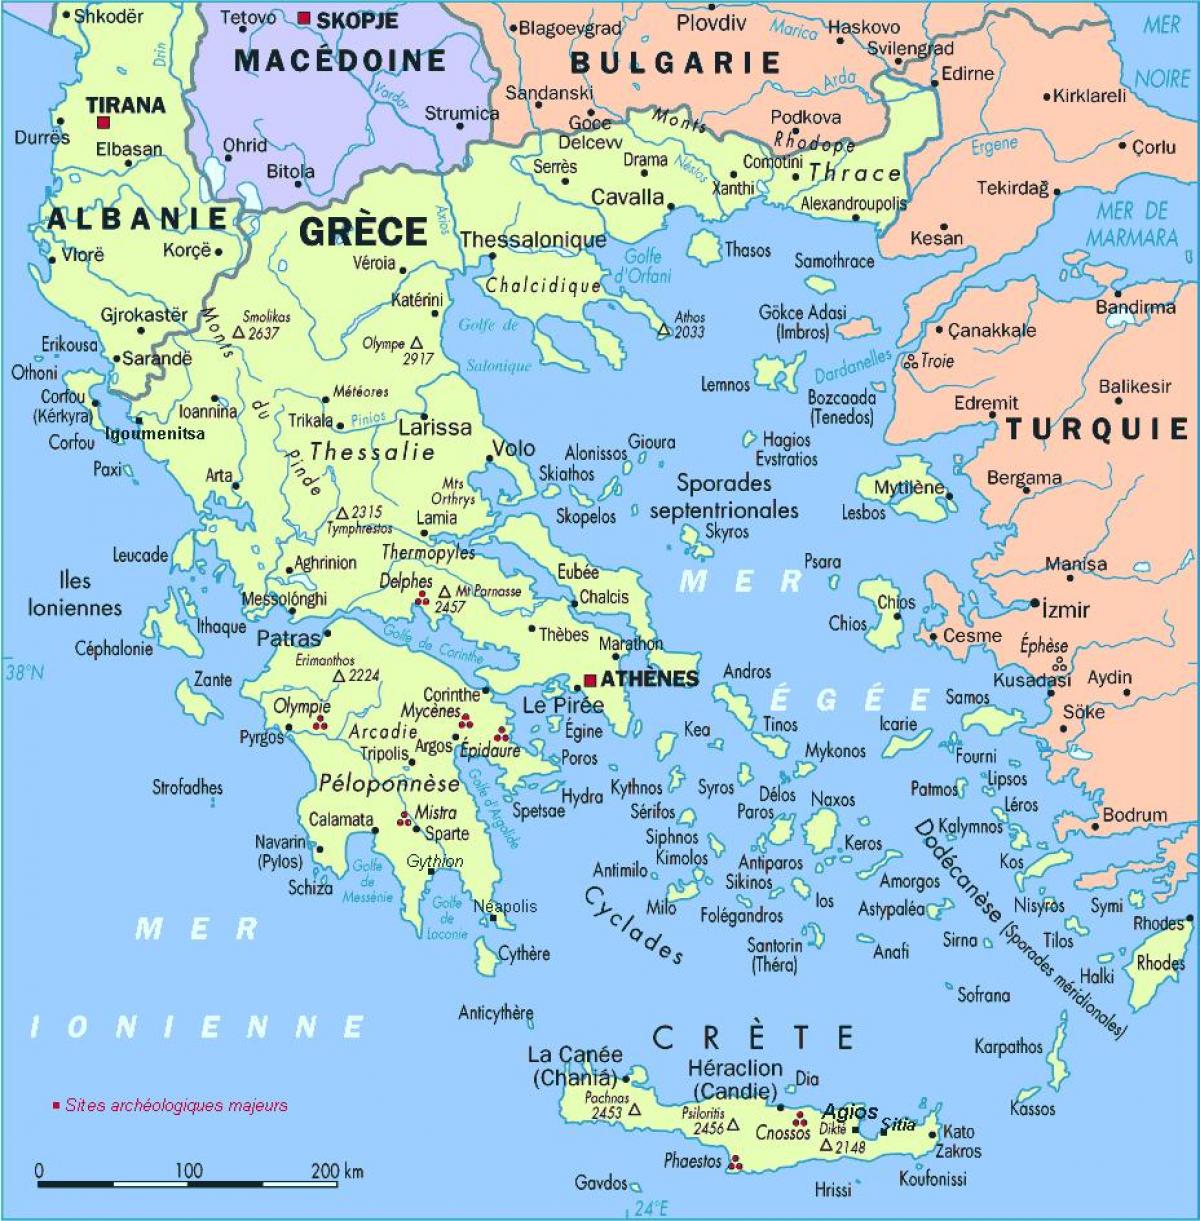 Karte von Griechenland und Umgebung